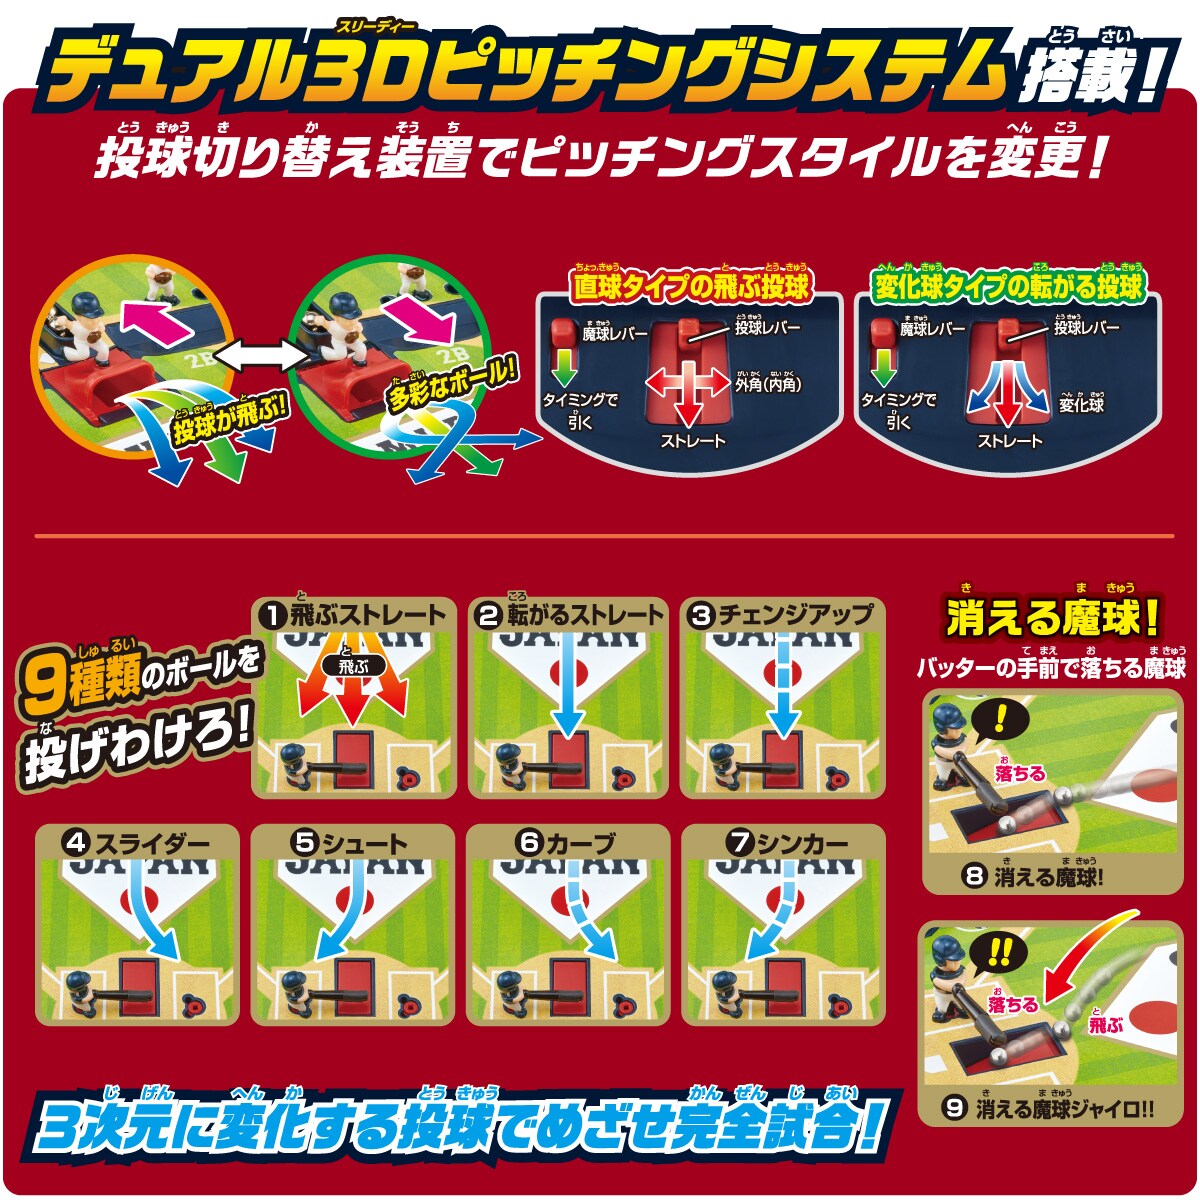 野球盤3dエーススタンダード 侍ジャパン 野球日本代表ver 商品カタログ エポック社の野球盤 エポック社公式サイト